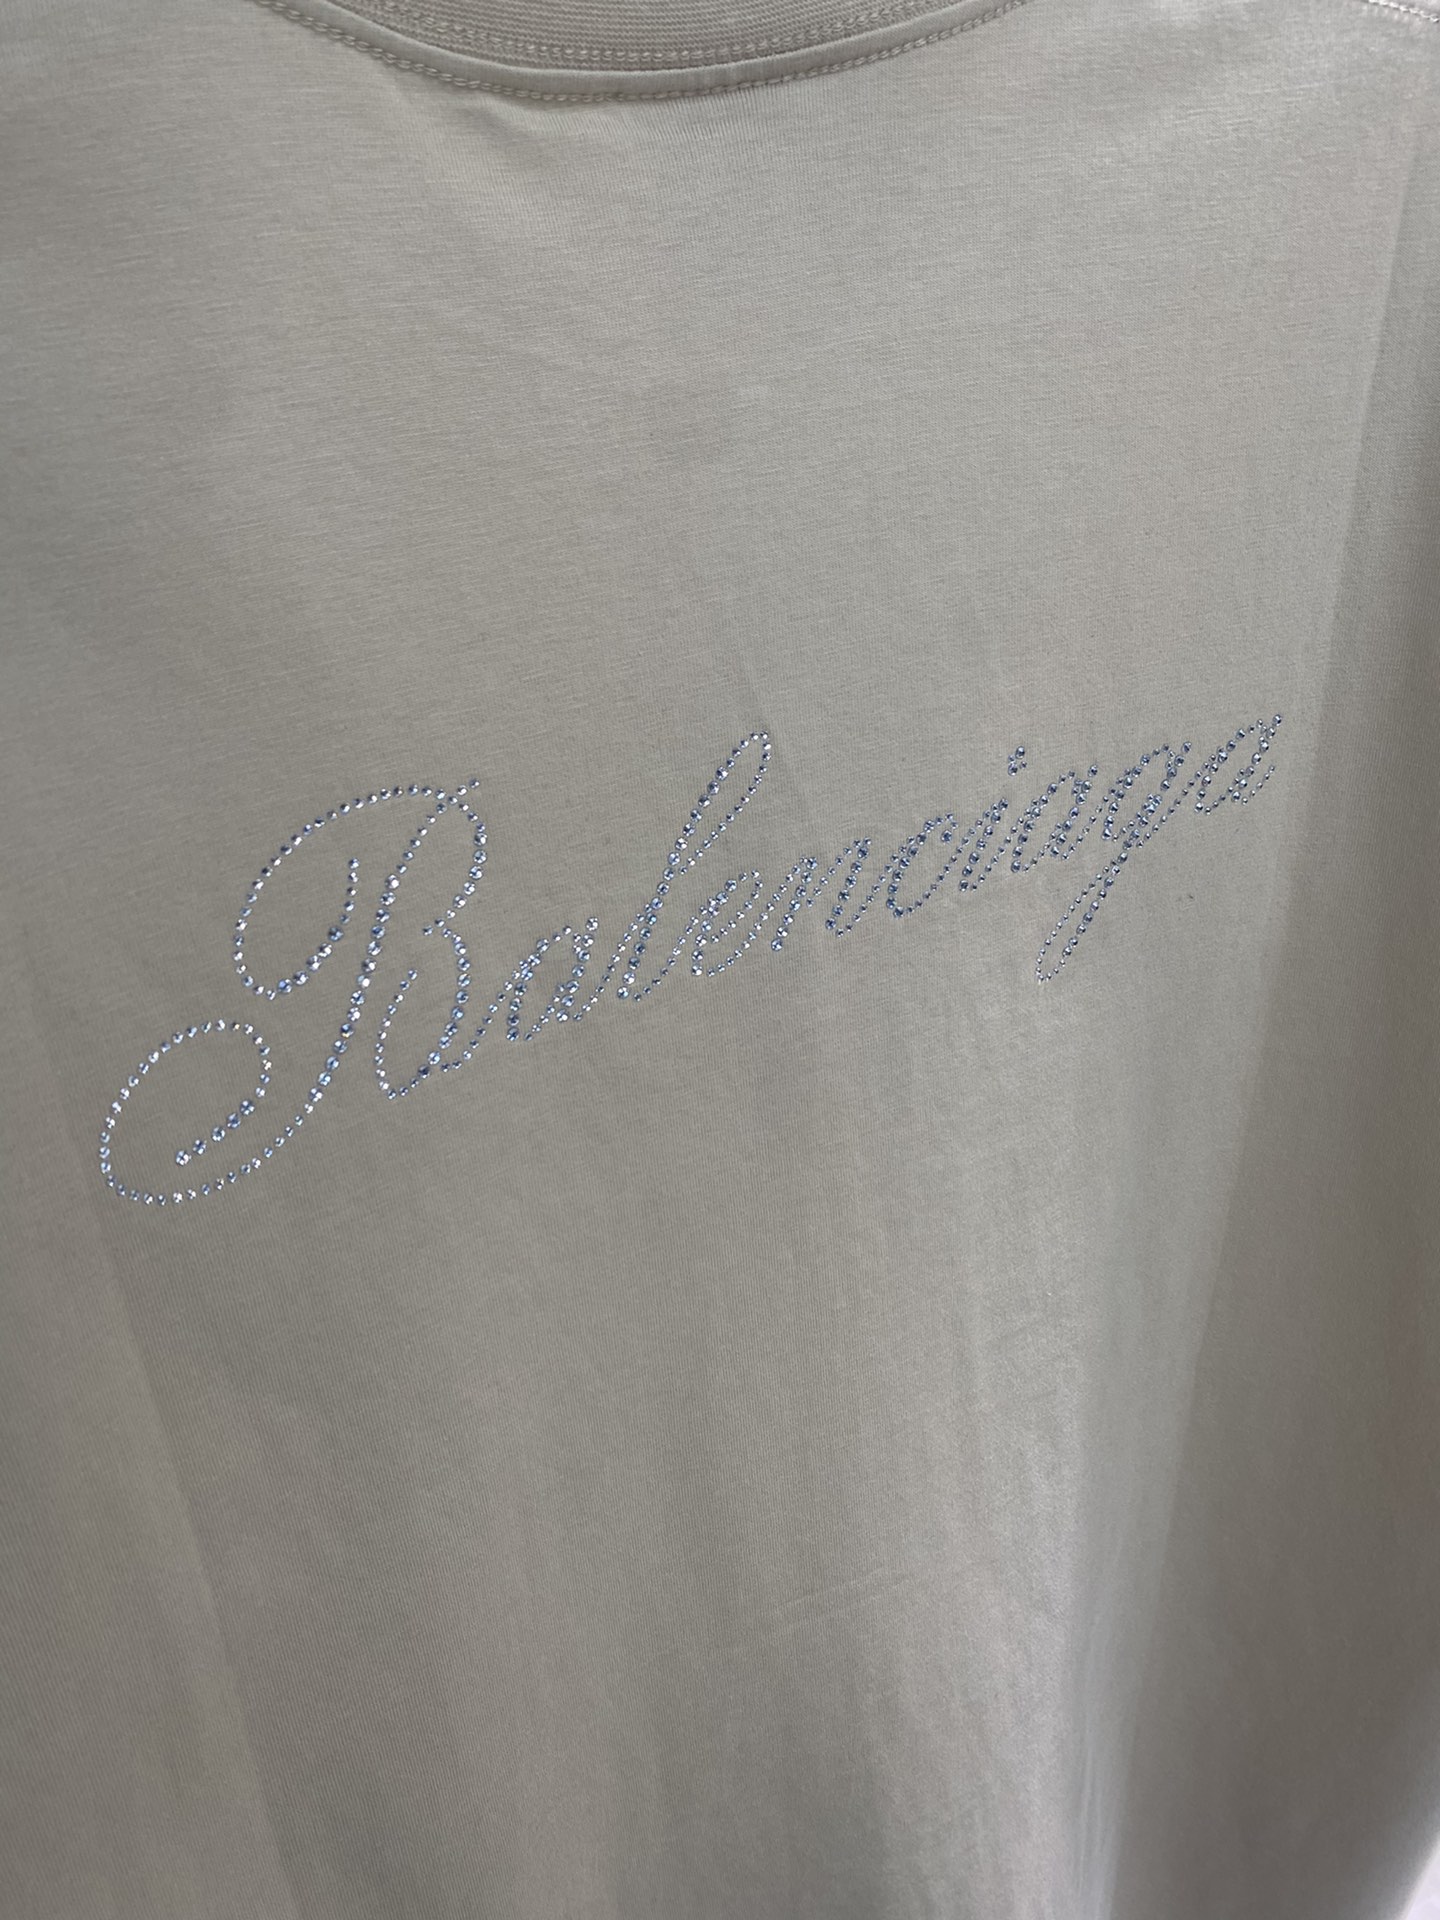 Balenciaga巴黎世家logo烫钻短袖Tee袖子以及下摆走线平直线距一致内里处理干净无线头无余边肩